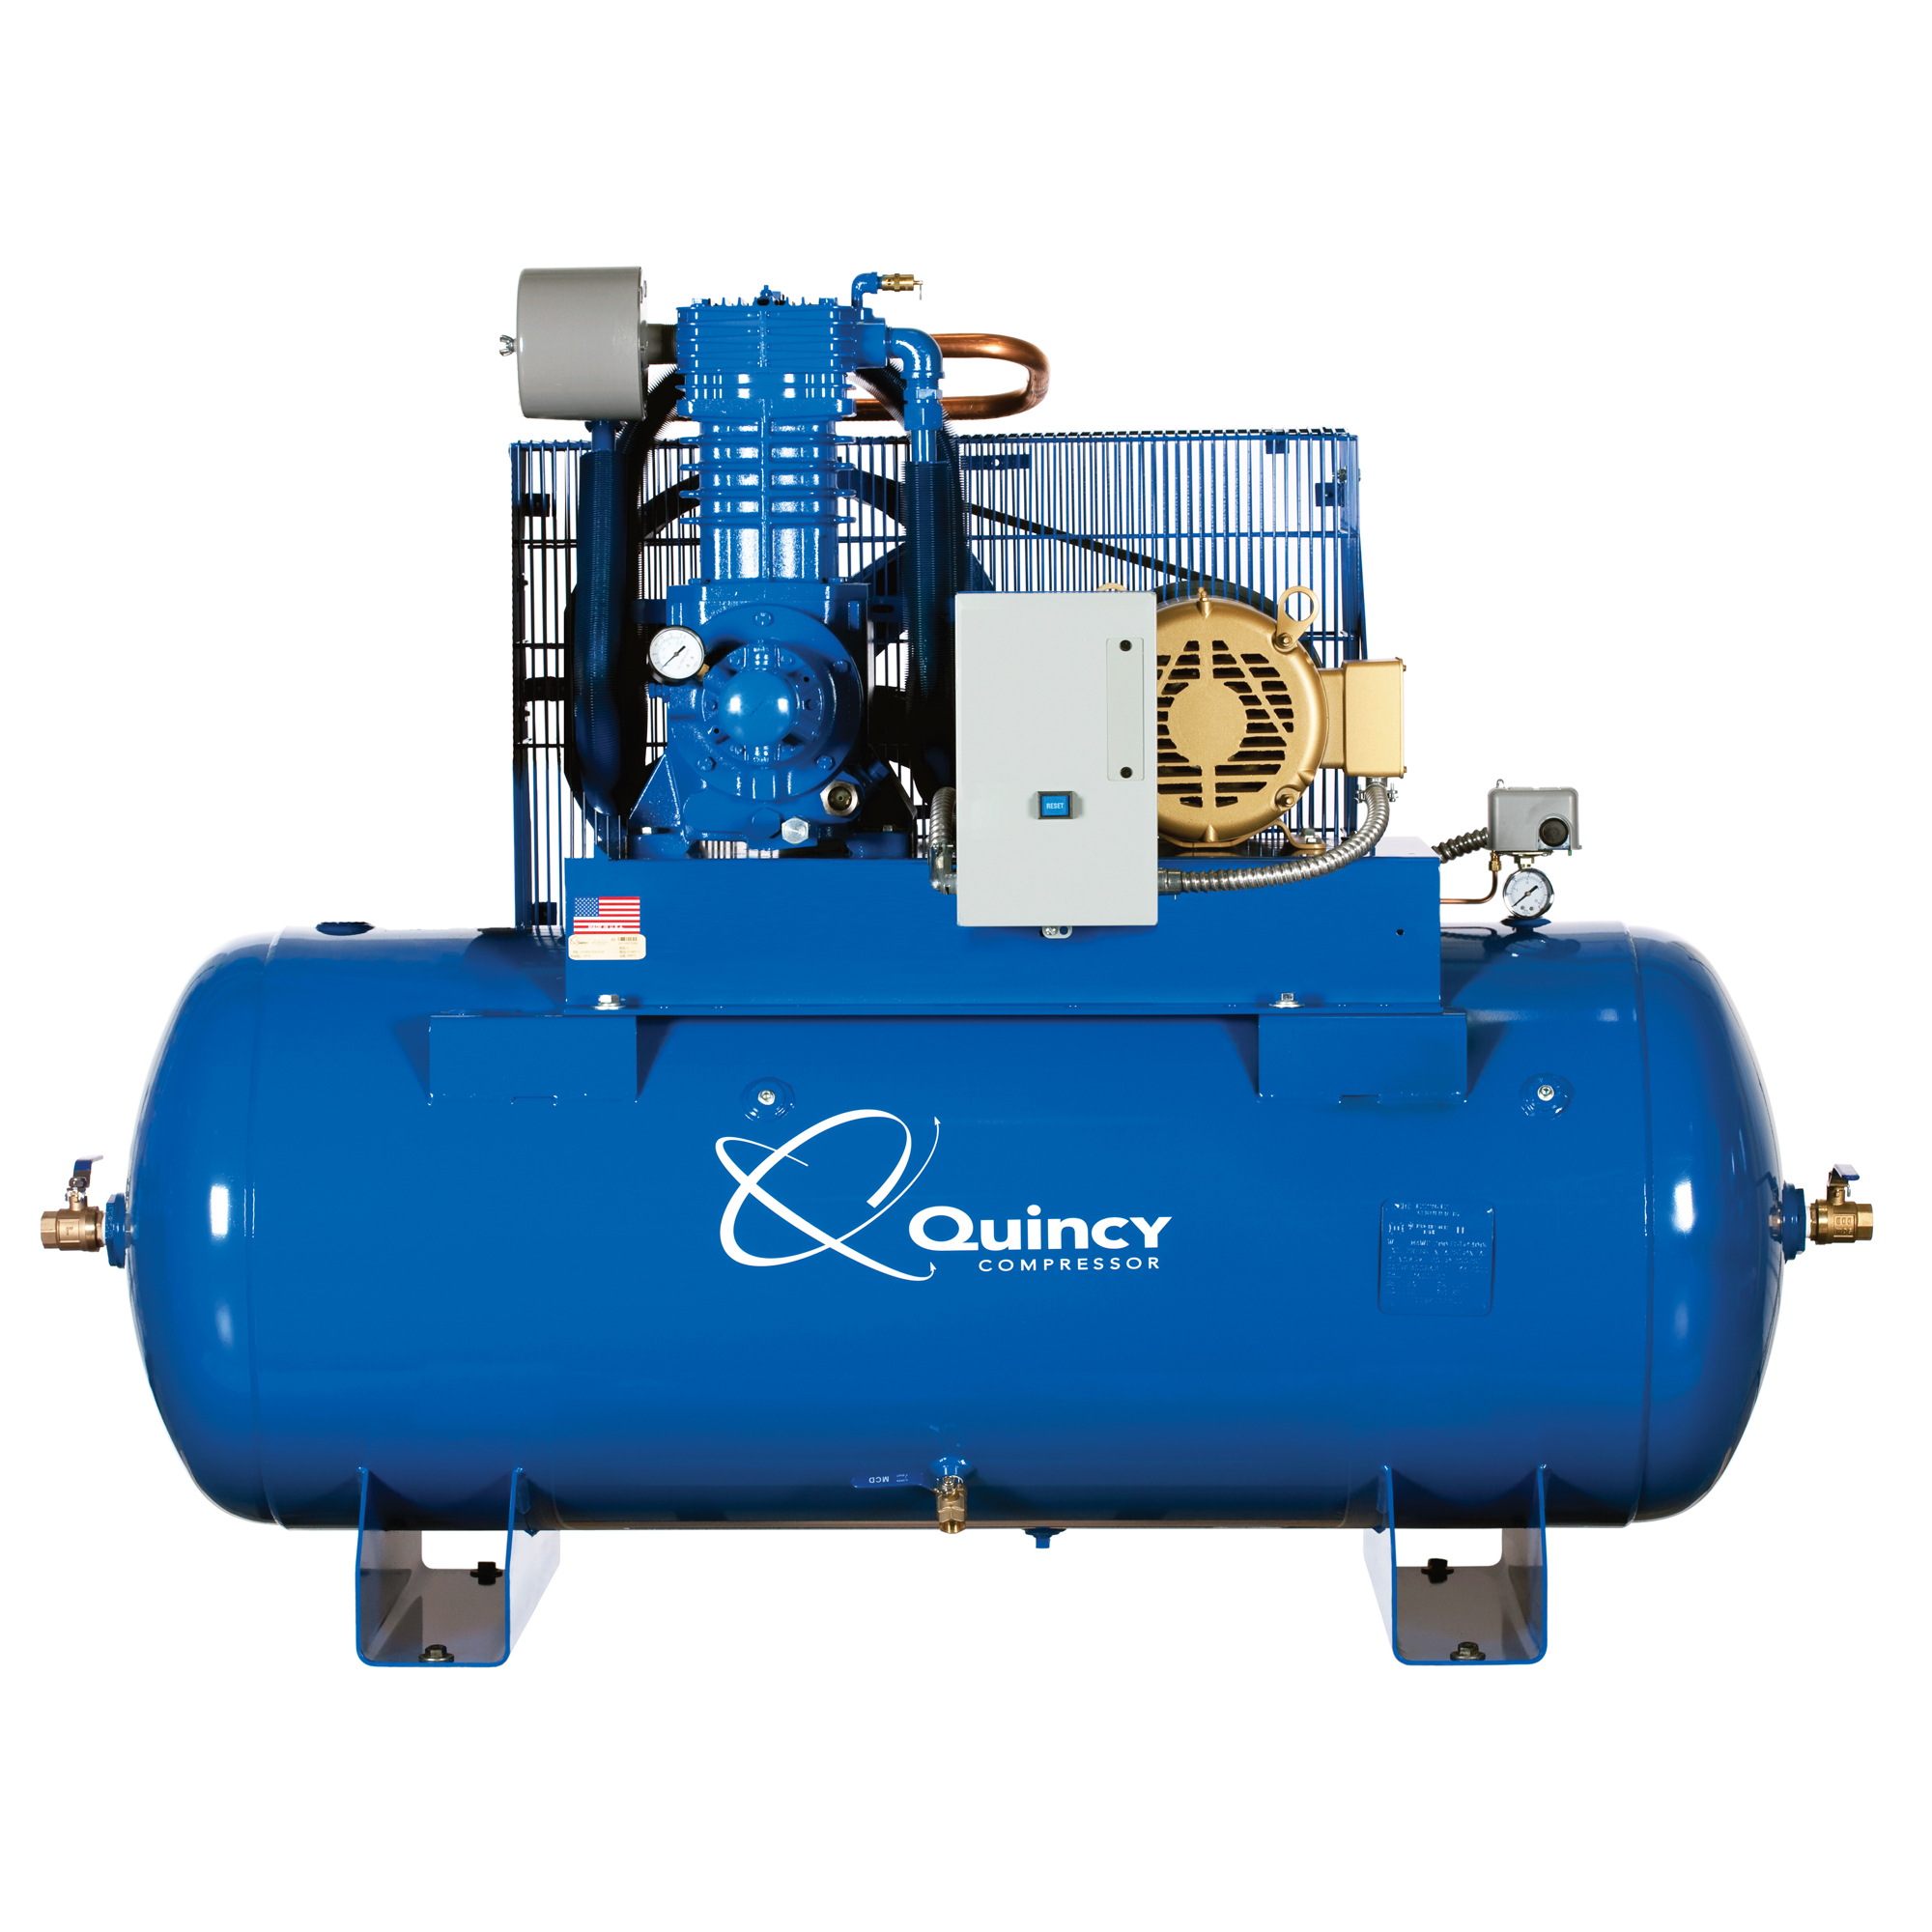 Quincy Compressor, QP1 5H 80G 2S Air Compressor 200V 3ph H MAX, Horsepower 5 HP, Air Tank Size 80 Gal, Volts 200 Model 553D80HCA20M